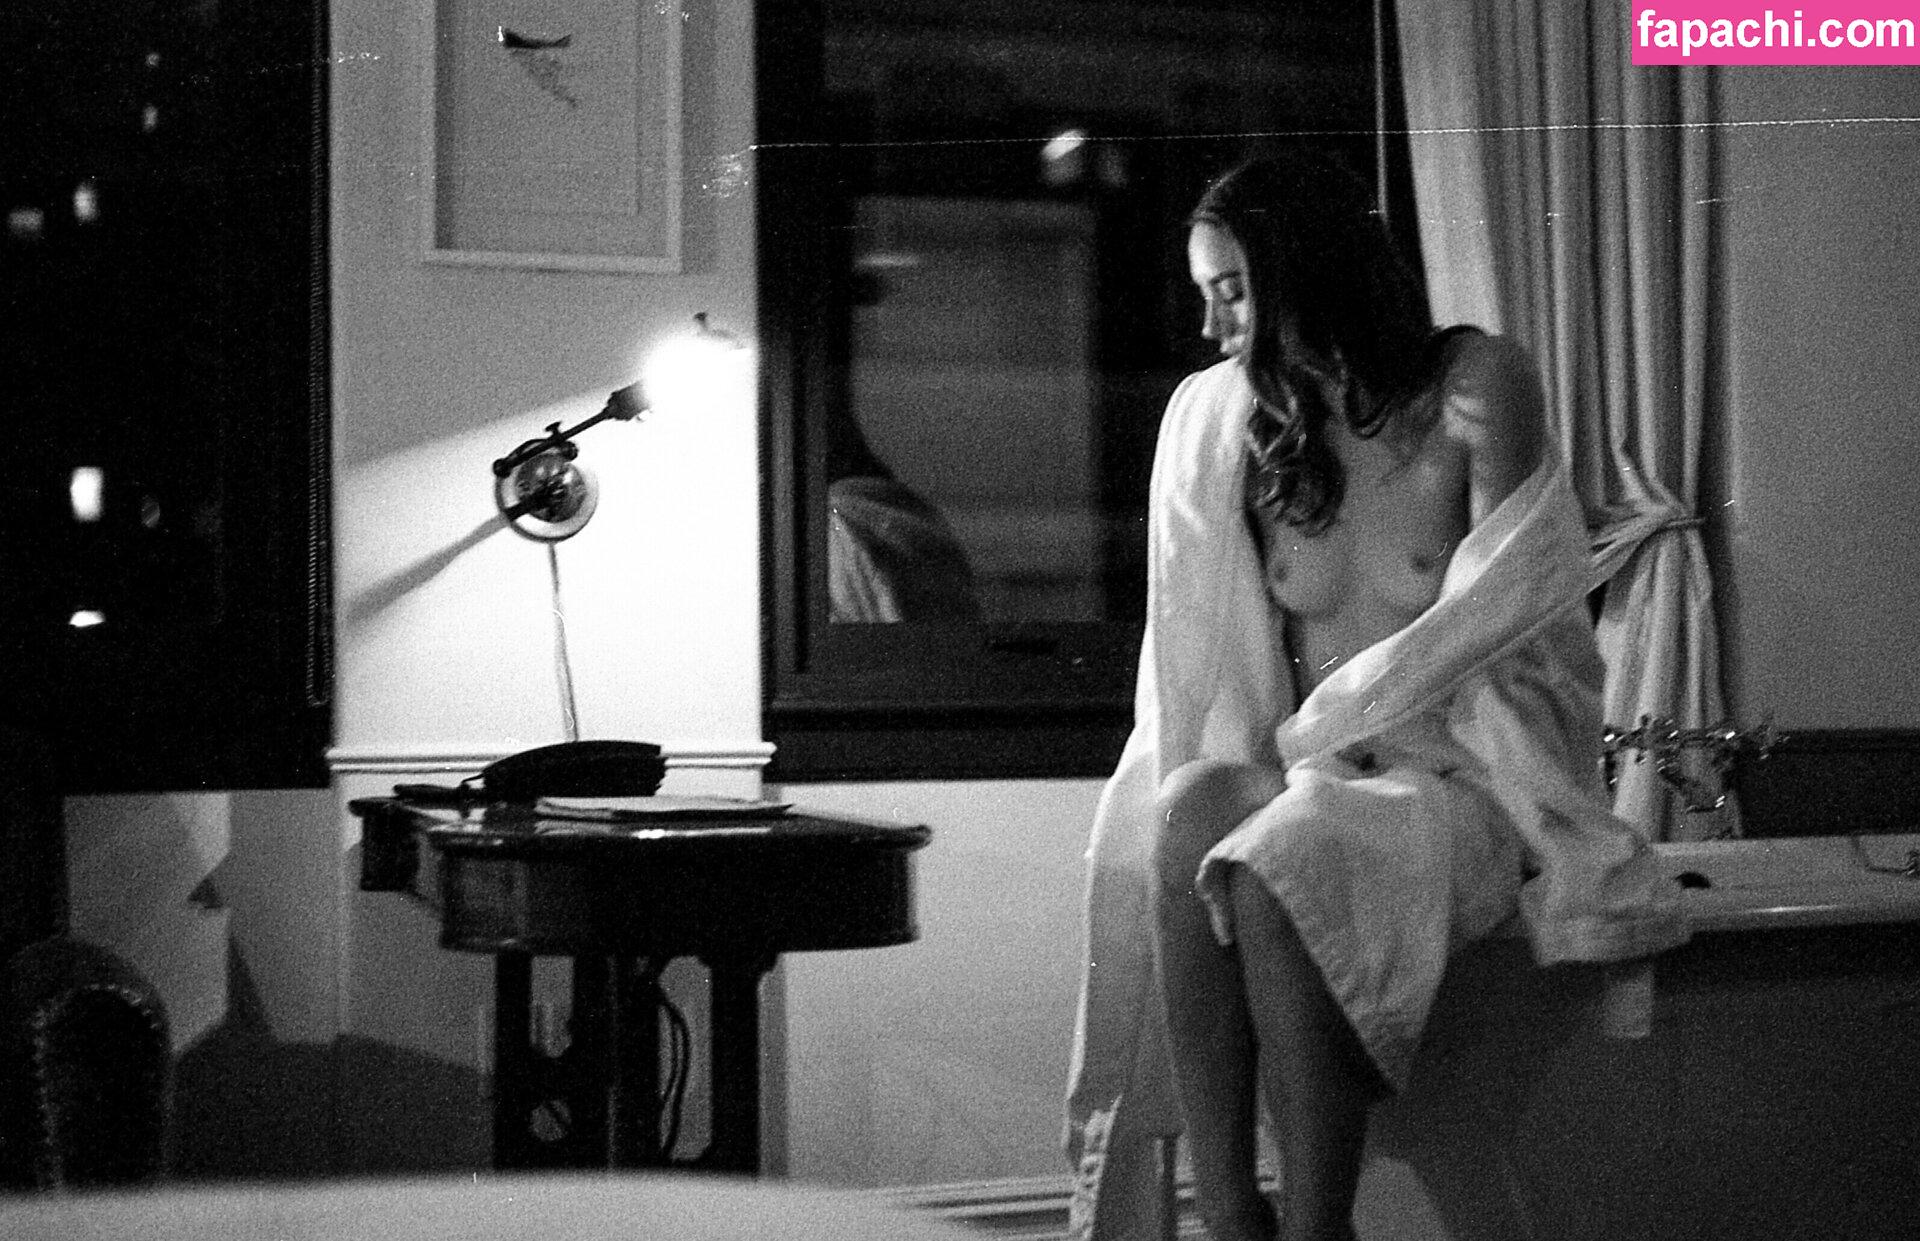 Tessa’s Ghost / glitter.ghost / tessasghost / xgypsykitten / xlittlekitten leaked nude photo #0017 from OnlyFans/Patreon